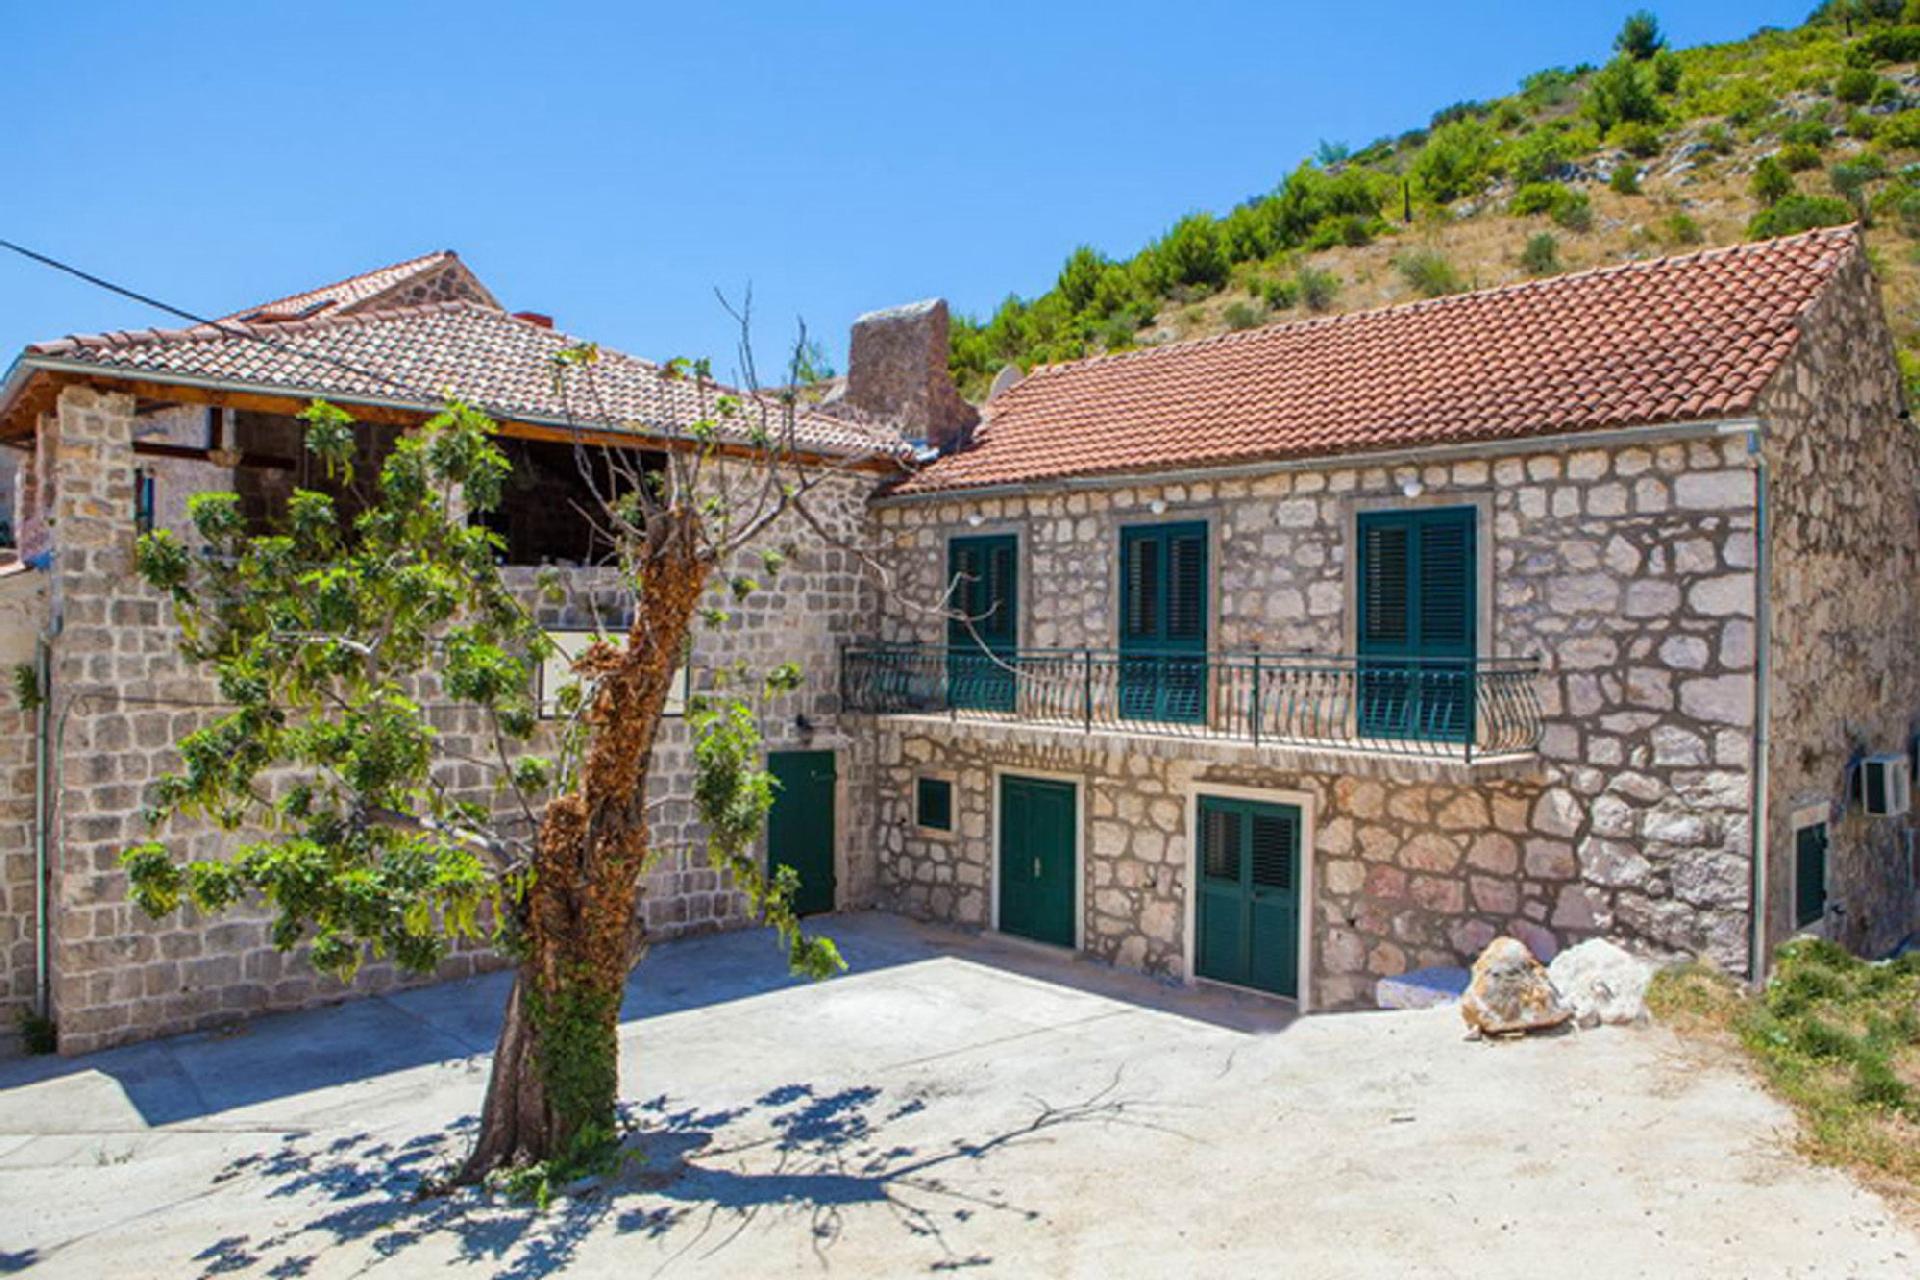 Ferienwohnung für 6 Personen ca. 75 m² i  in Dalmatien